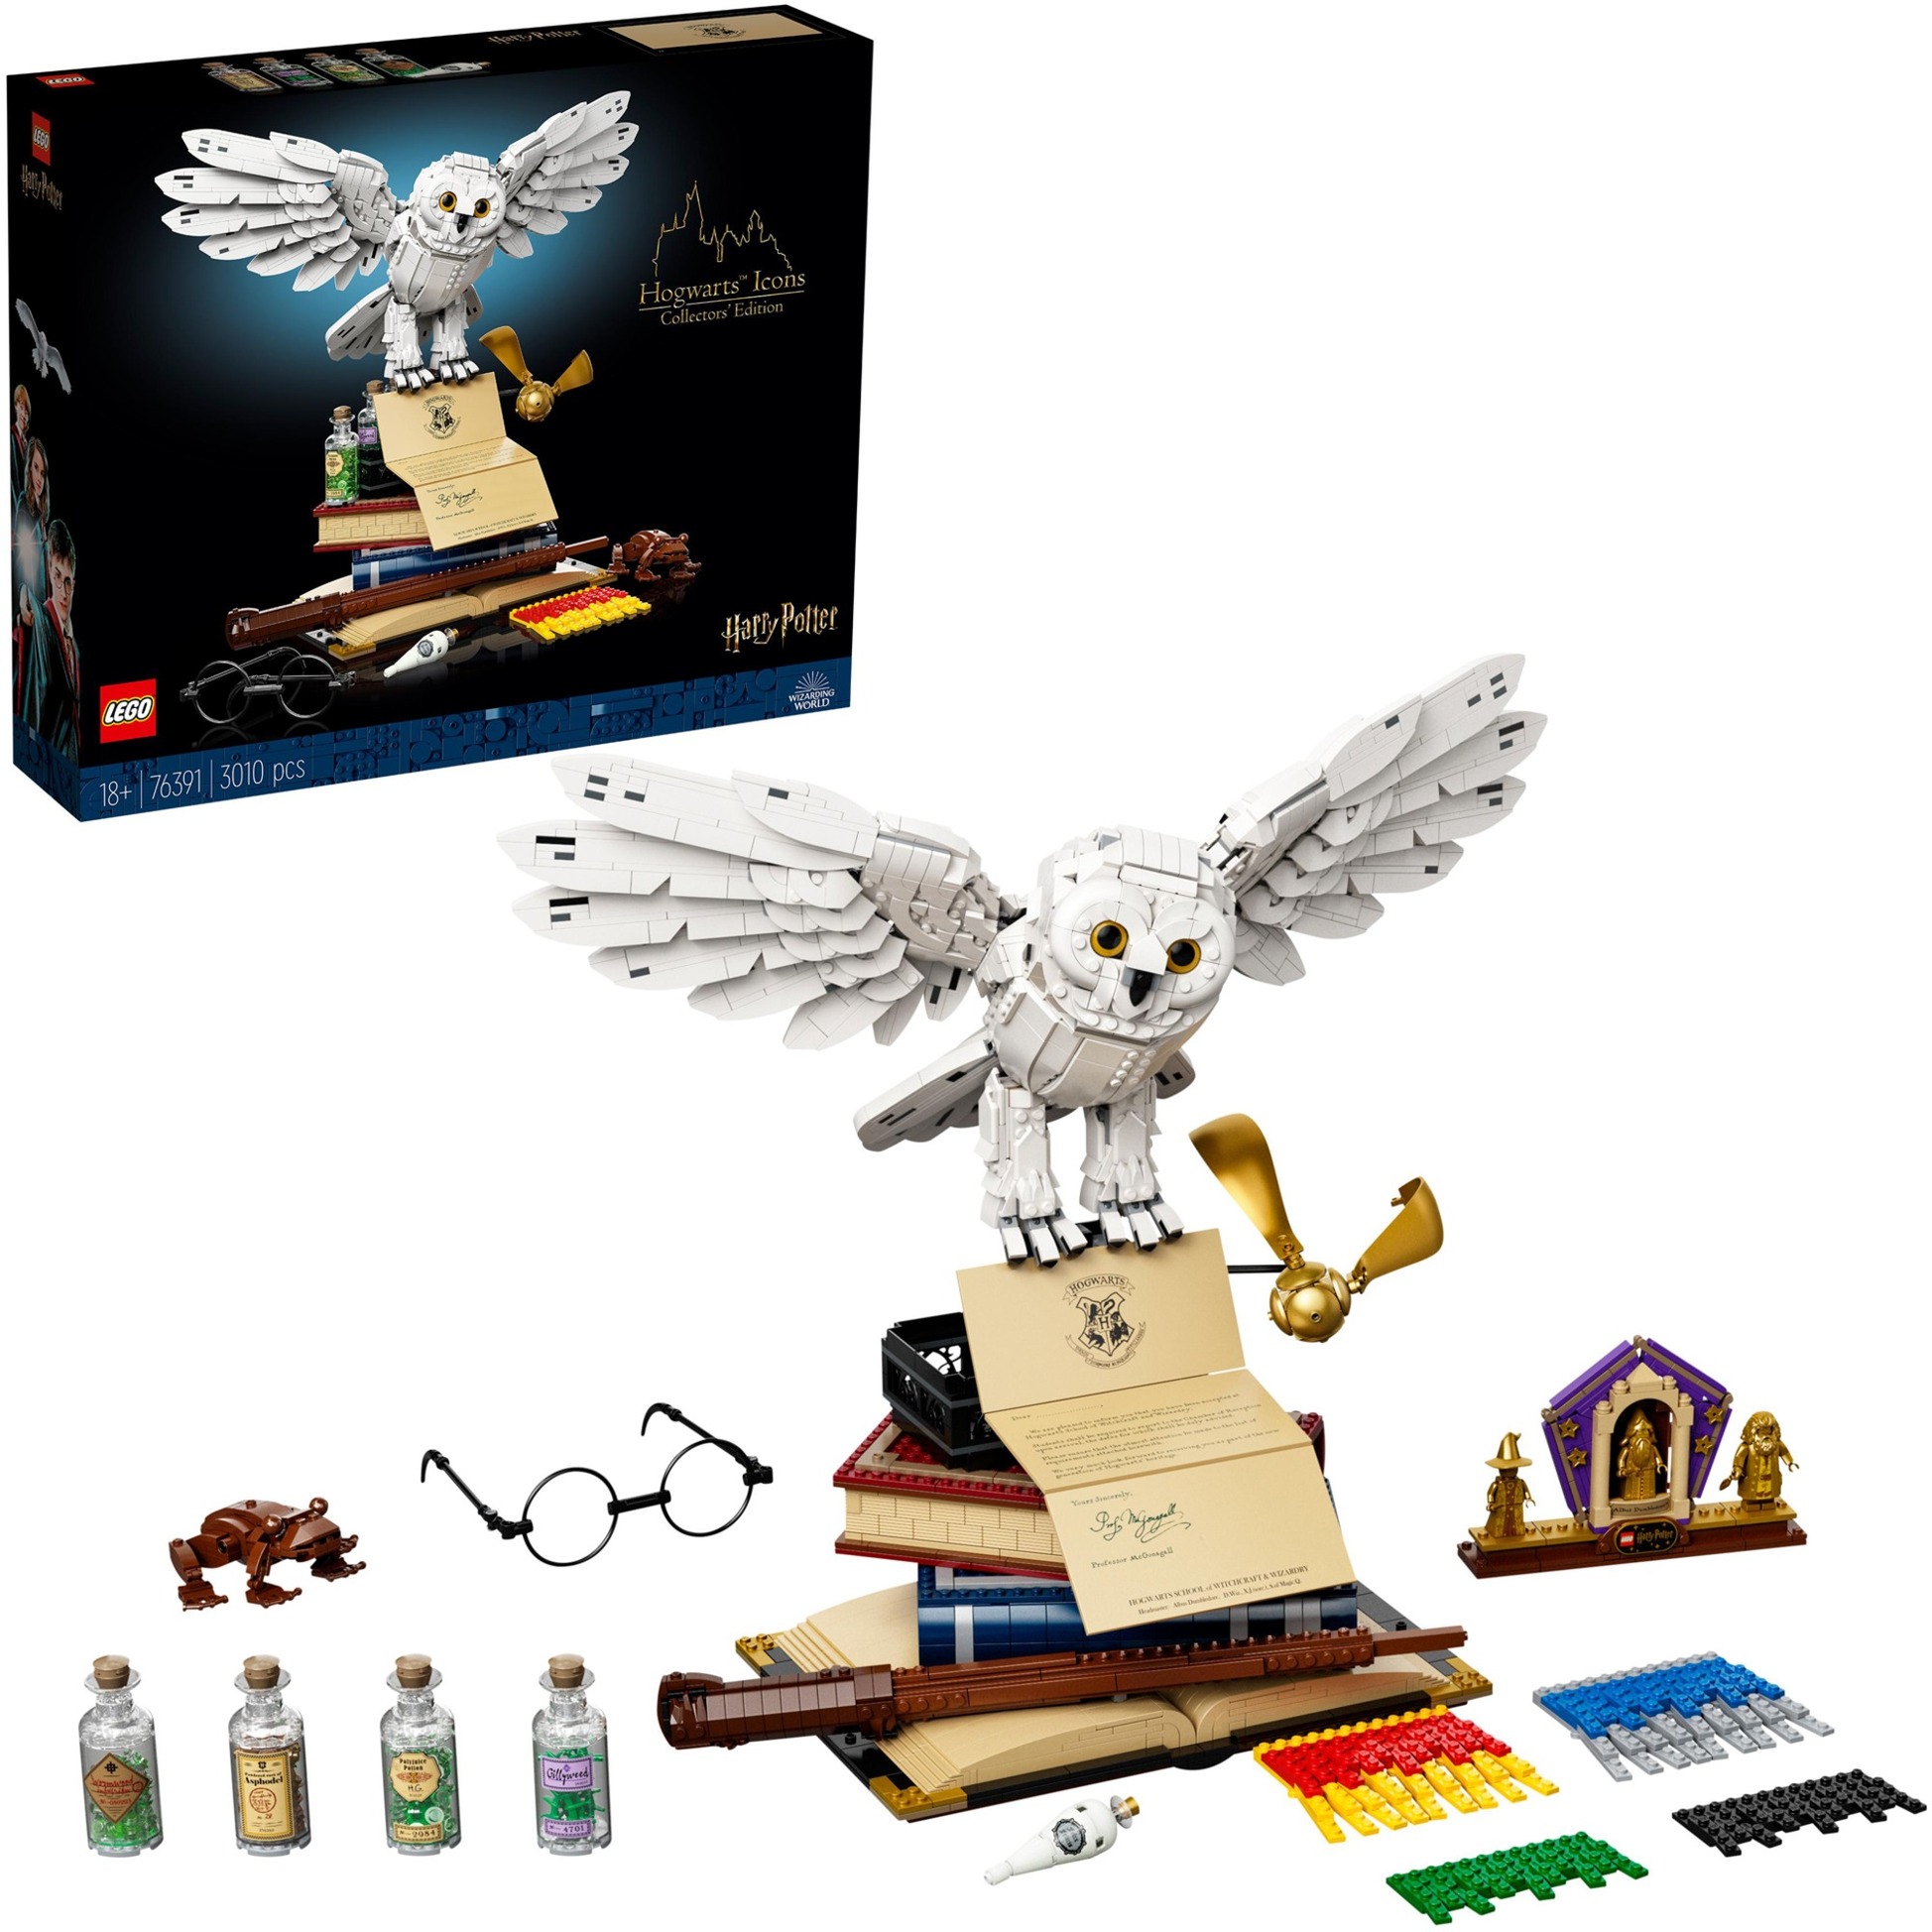 Spielzeug: Lego 76391 Hogwarts Ikonen - Sammler-Edition